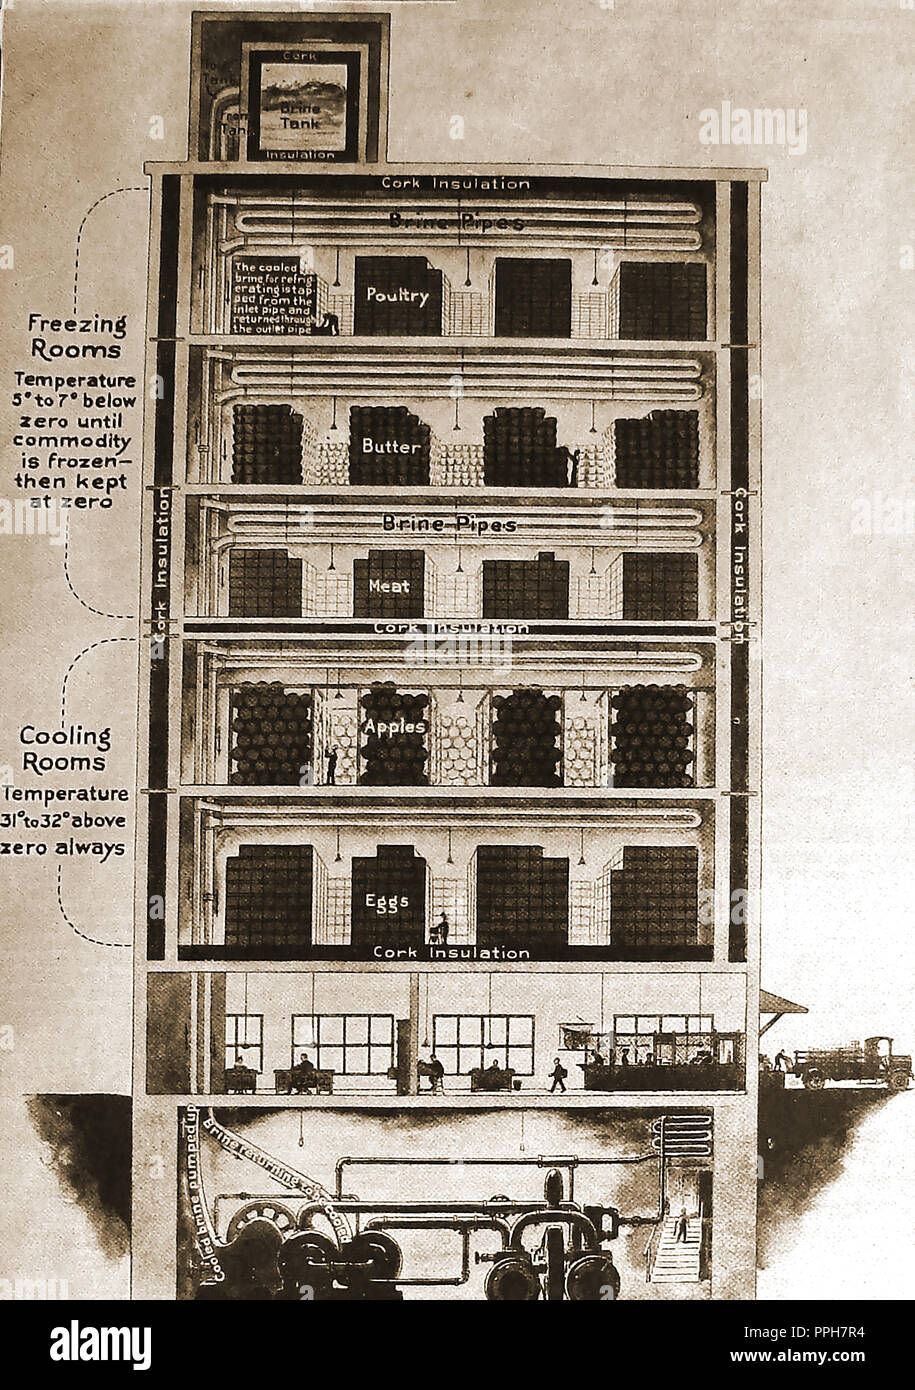 Un entrepôt frigorifique alimentaire en Grande-Bretagne vers 1920 à l'aide de chambres de congélation, la saumure et les tuyaux d'isolation en liège Banque D'Images